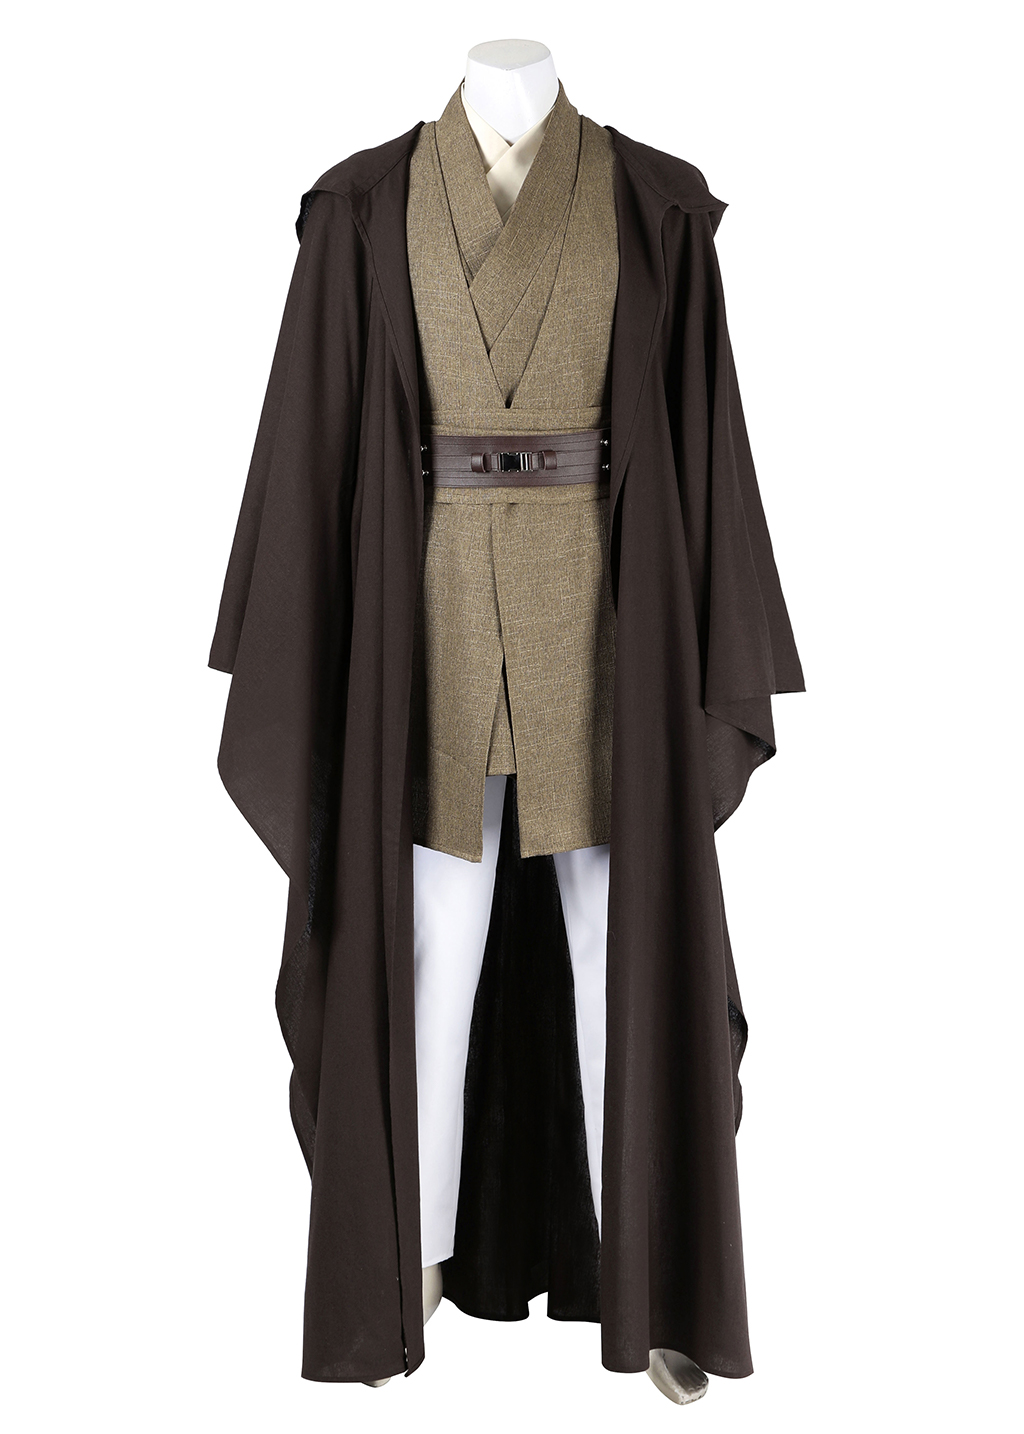 Mace Windu Costume Star Wars Episode II Attack of the Clones Suit Cosplay